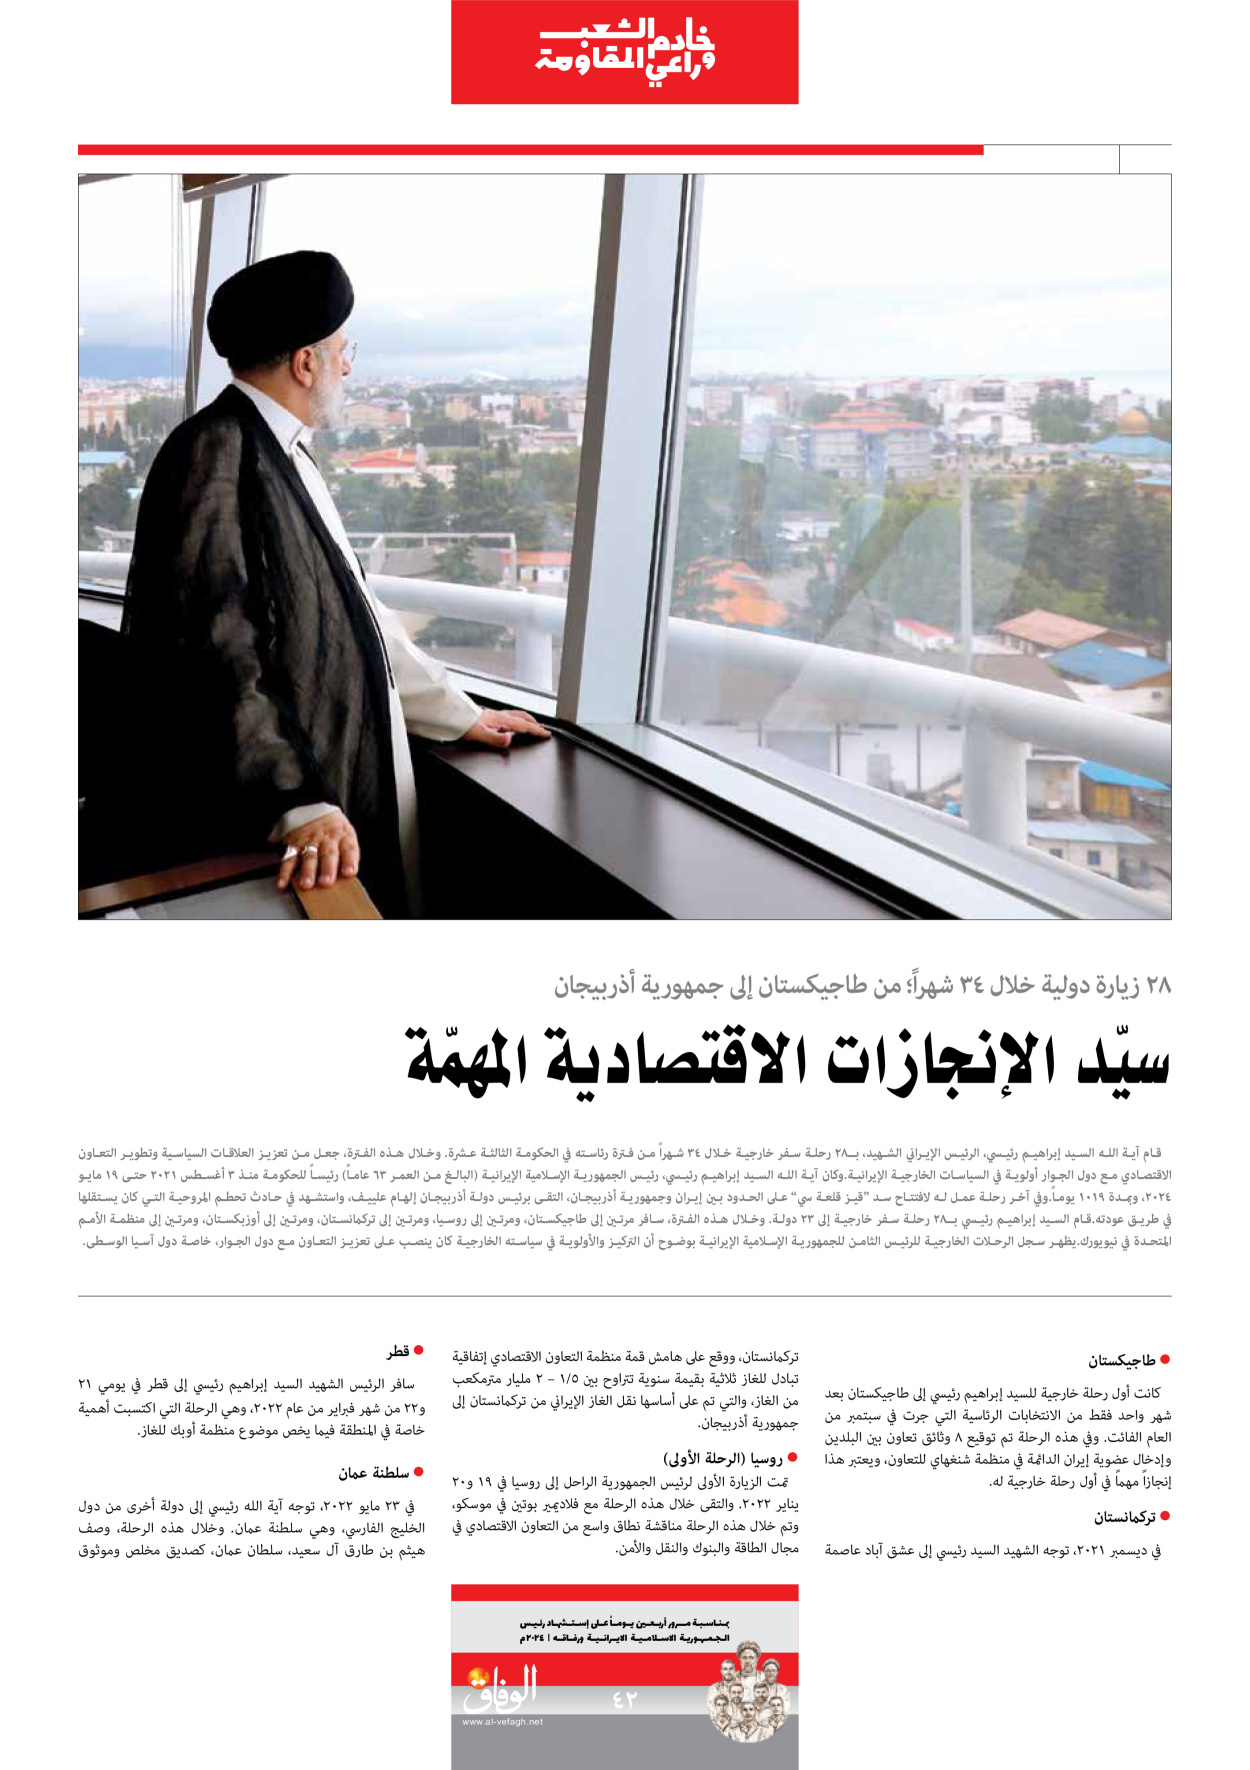 صحیفة ایران الدولیة الوفاق - ملحق ویژه نامه چهلم شهید رییسی - ٢٩ يونيو ٢٠٢٤ - الصفحة ٤۲